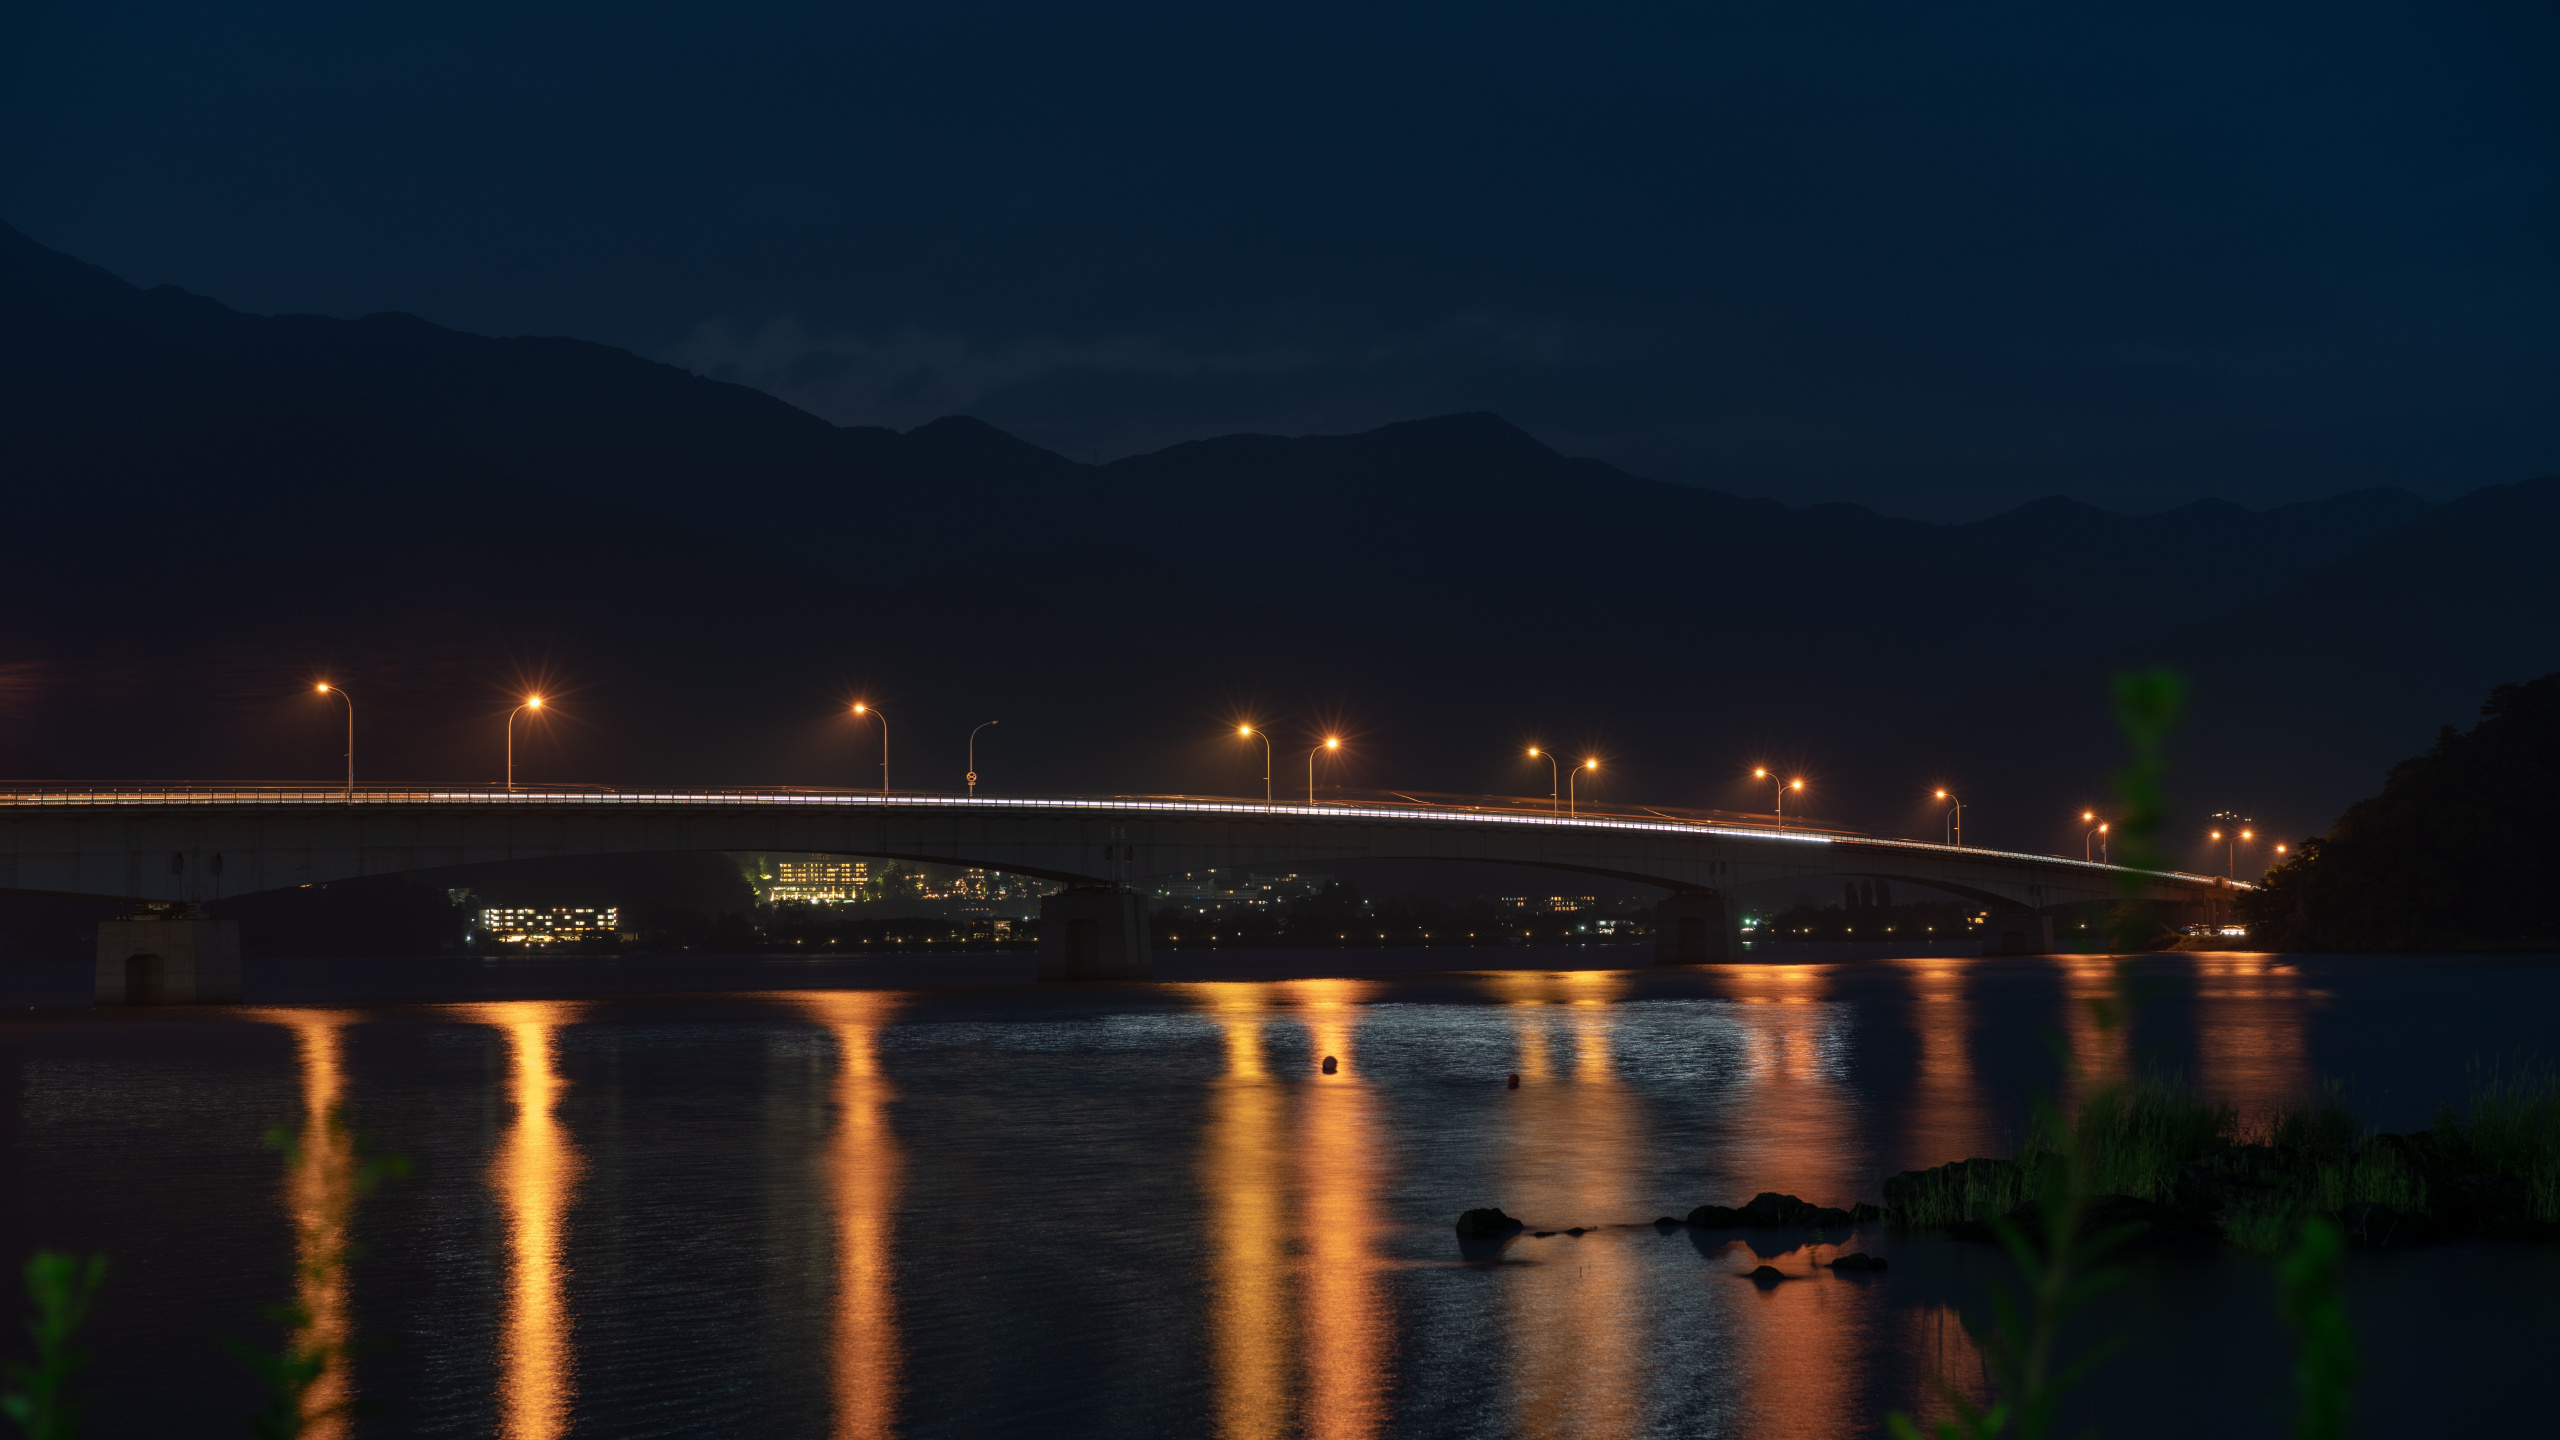 Puente Iluminado Sobre el Agua Durante la Noche. Wallpaper in 2560x1440 Resolution